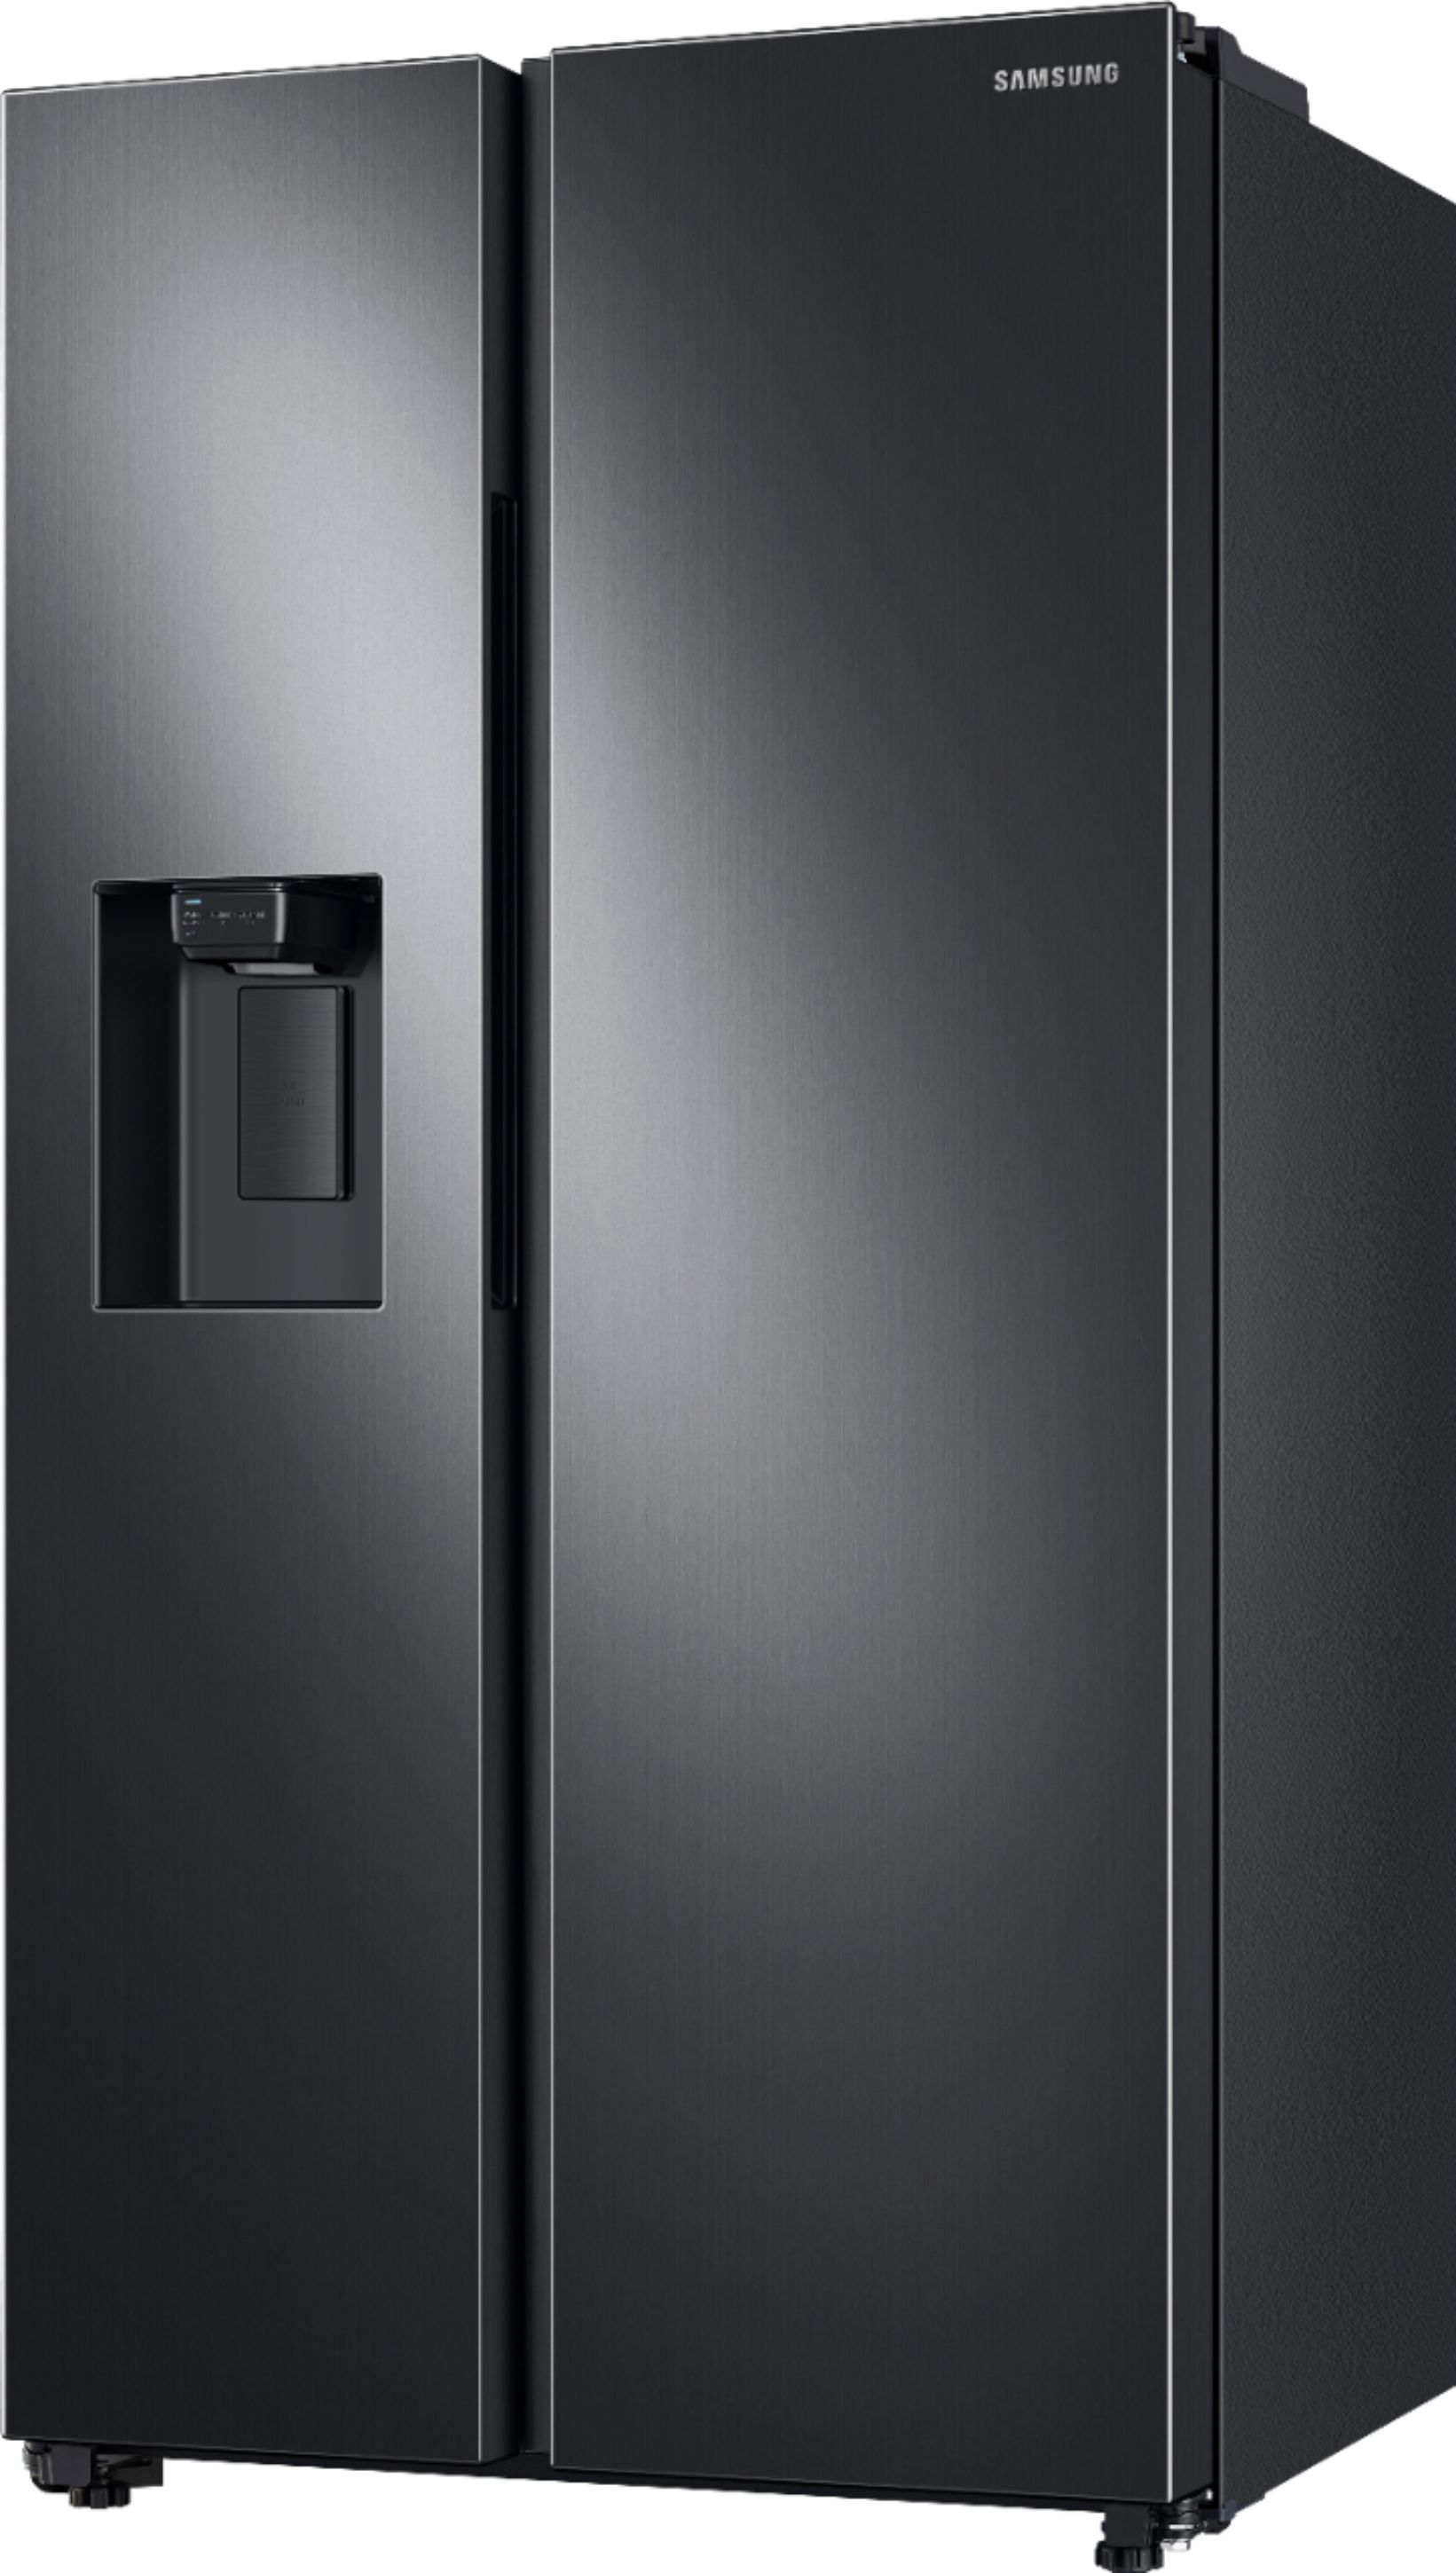 Left View: Samsung - 22 cu. ft. Smart 3-Door French Door Refrigerator - Black stainless steel